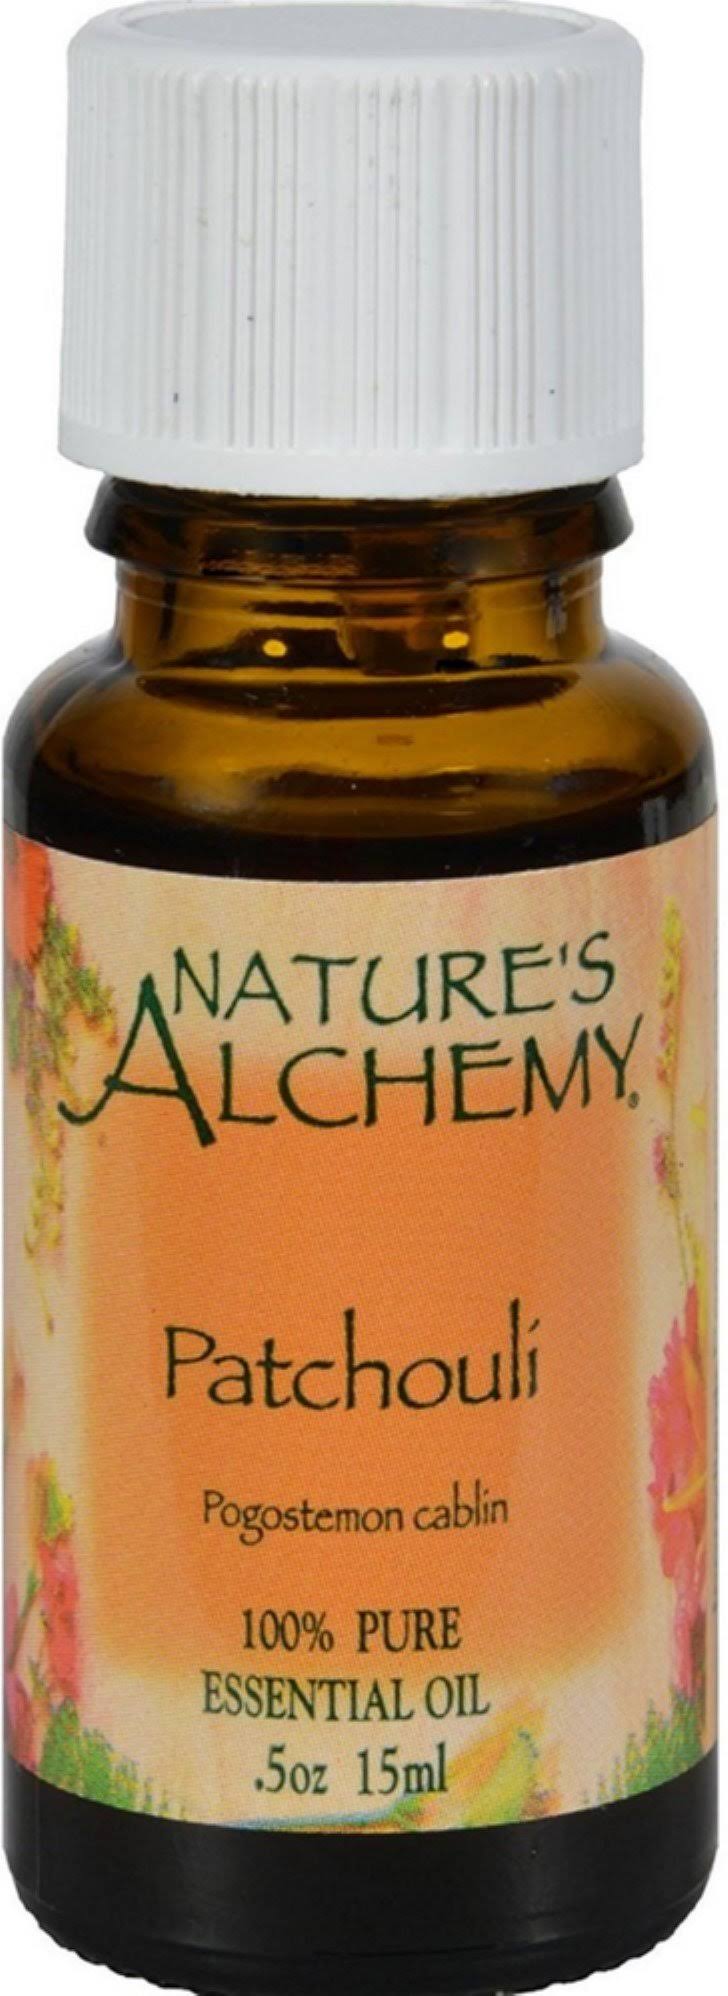 Nature's Alchemy Pure Essential Oil - Patchouli, 0.5oz